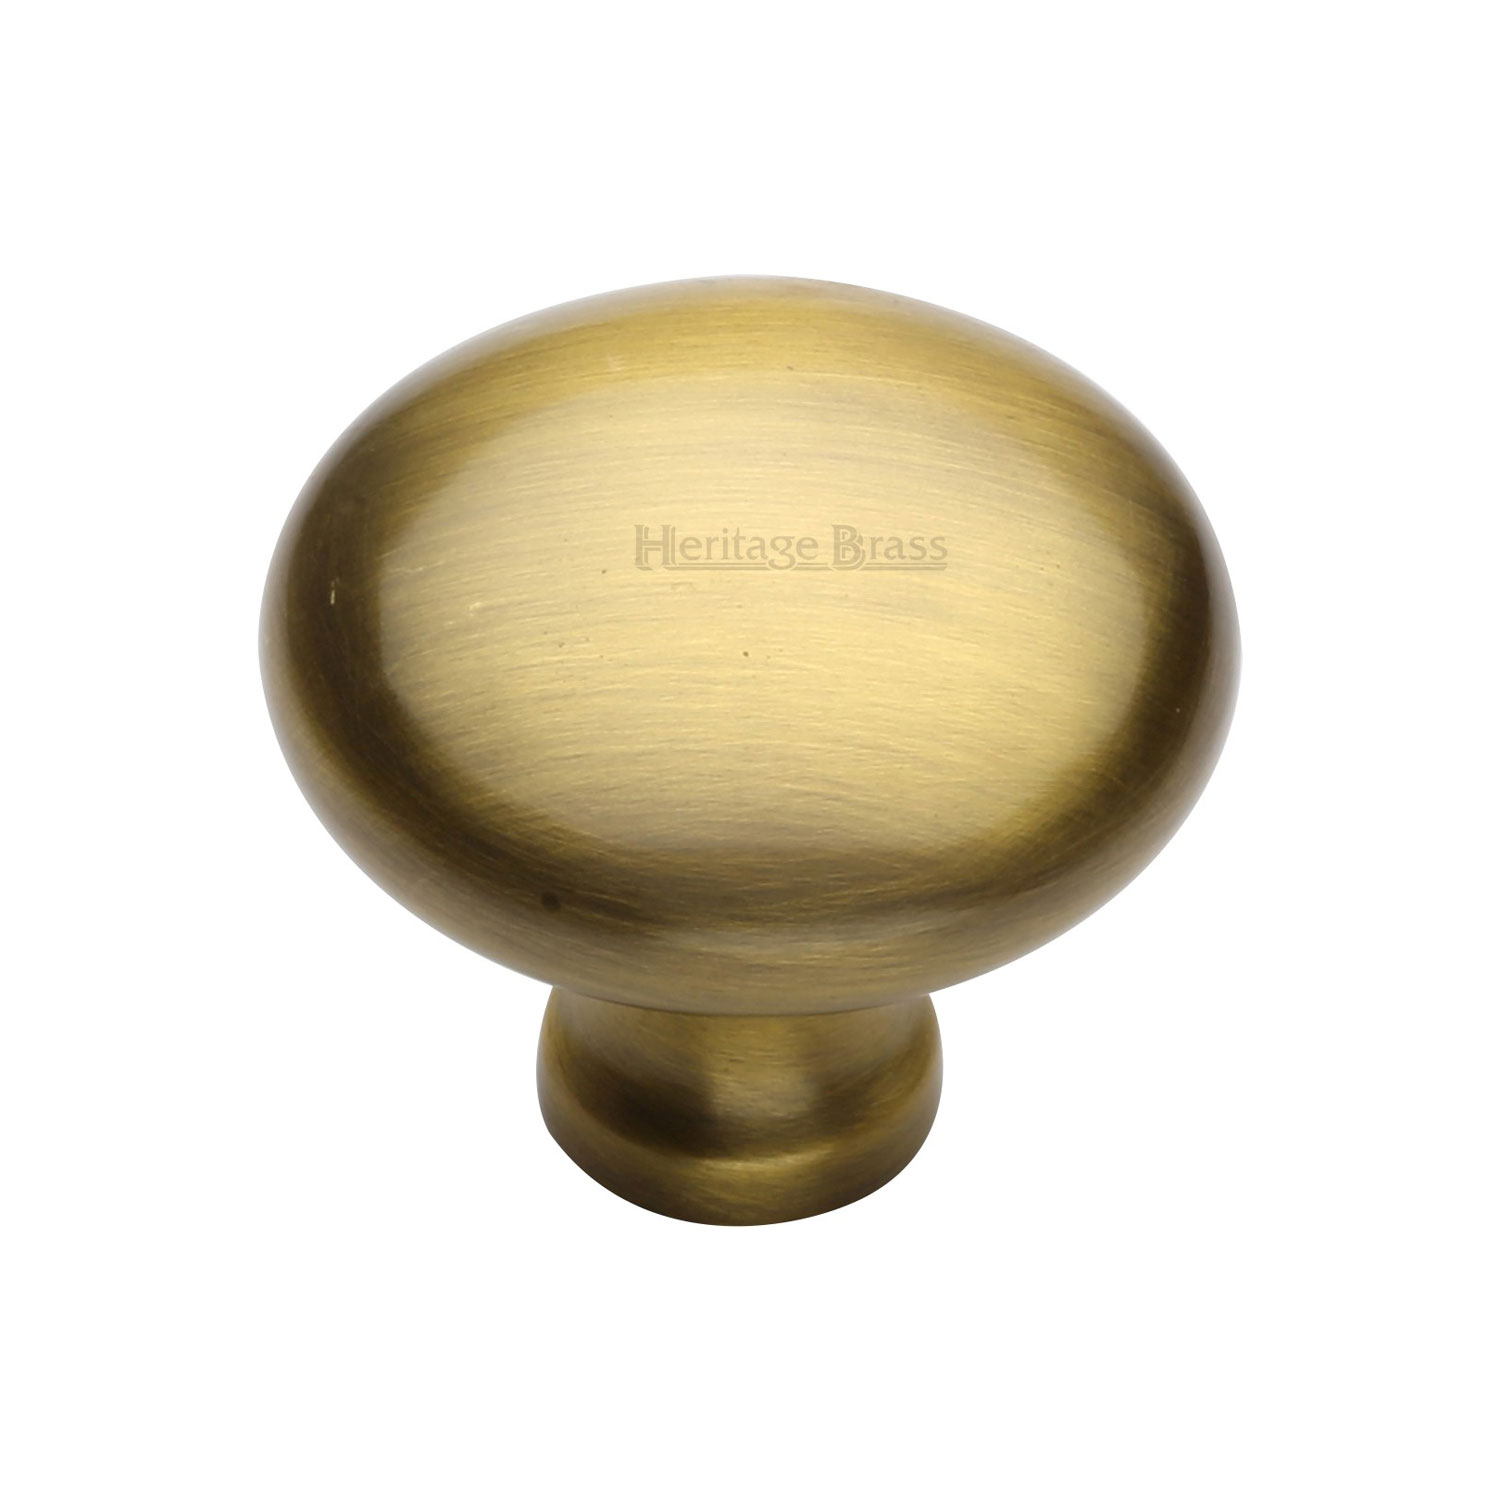 Heritage Brass Cabinet Knob Victorian Round Design 38mm